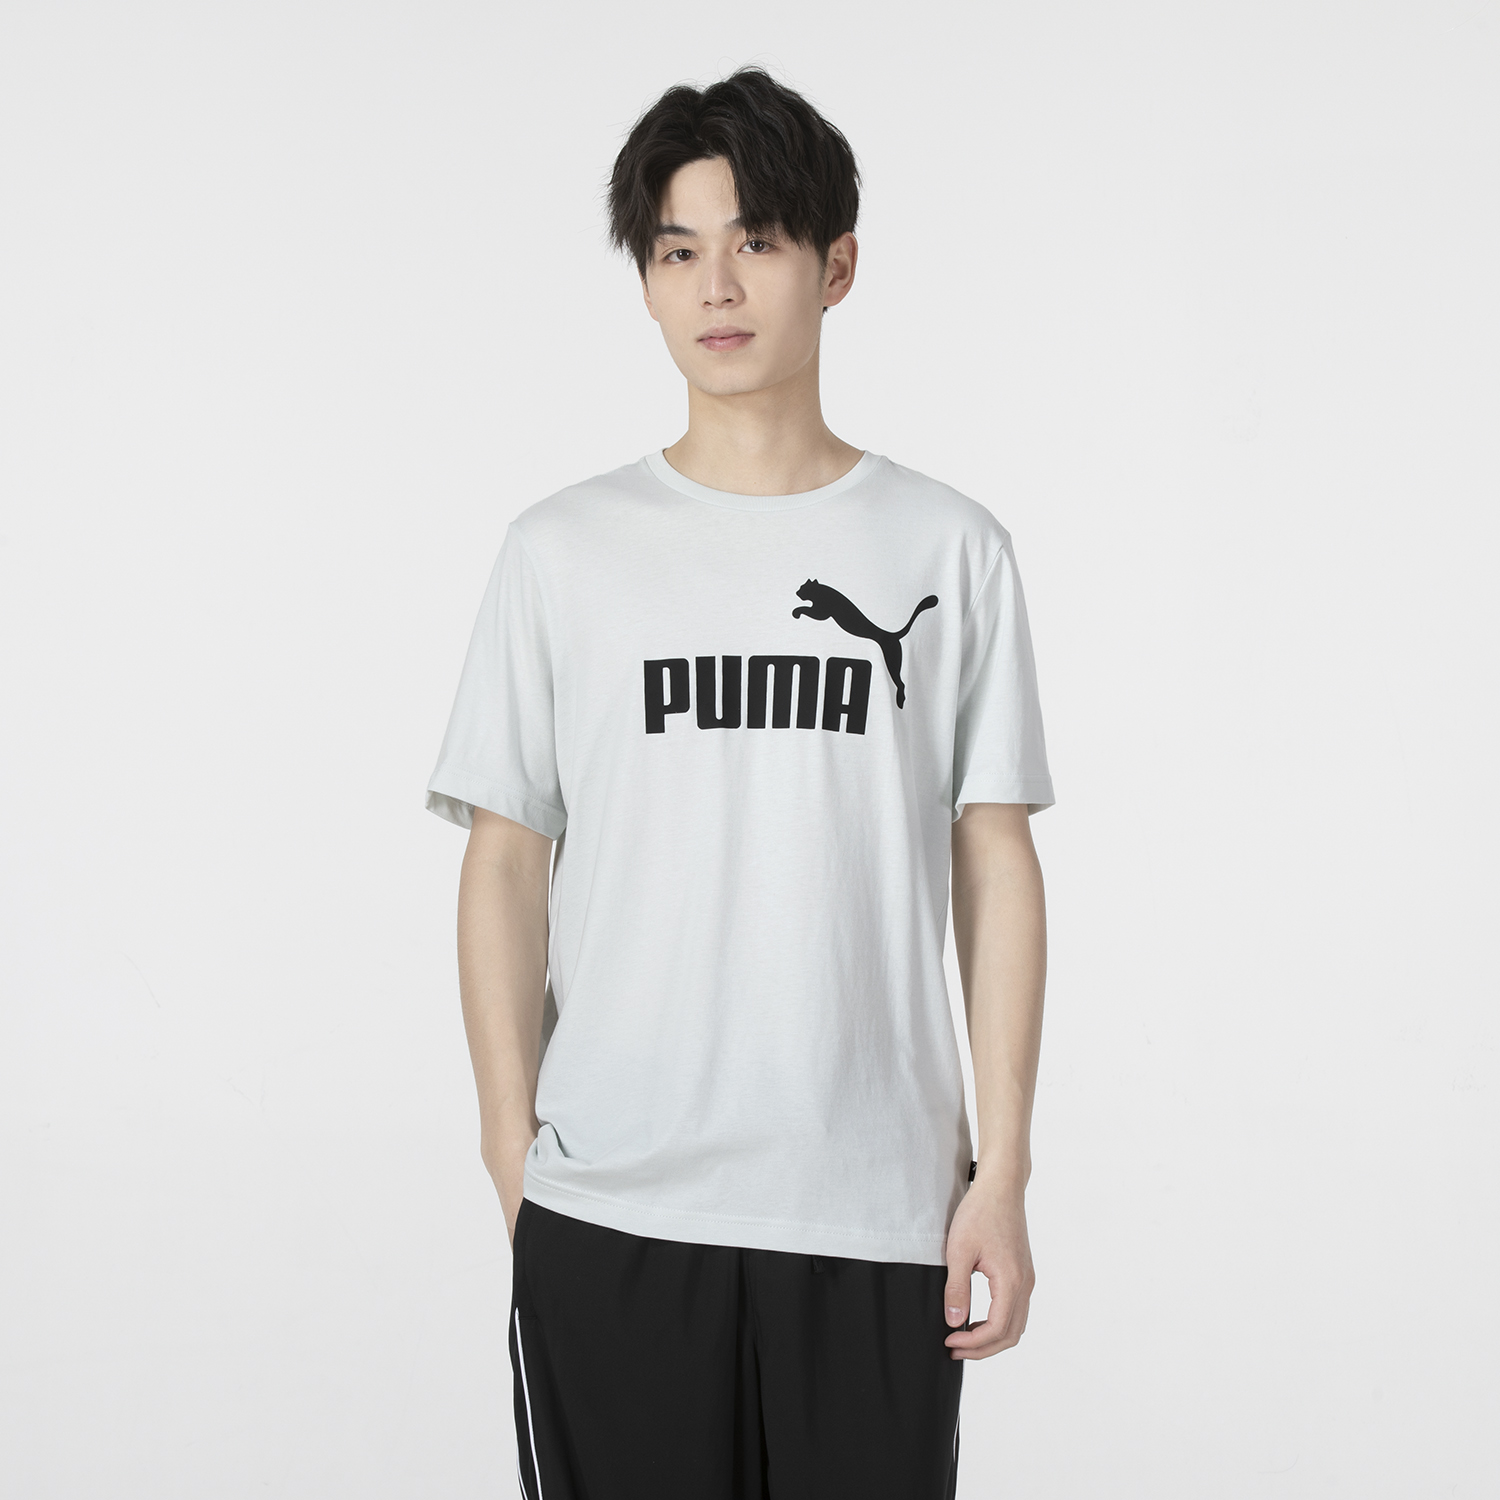 Puma | ESS Logo Tee (s)男士运动休闲短袖T恤商品图片,5.9折, 包邮包税